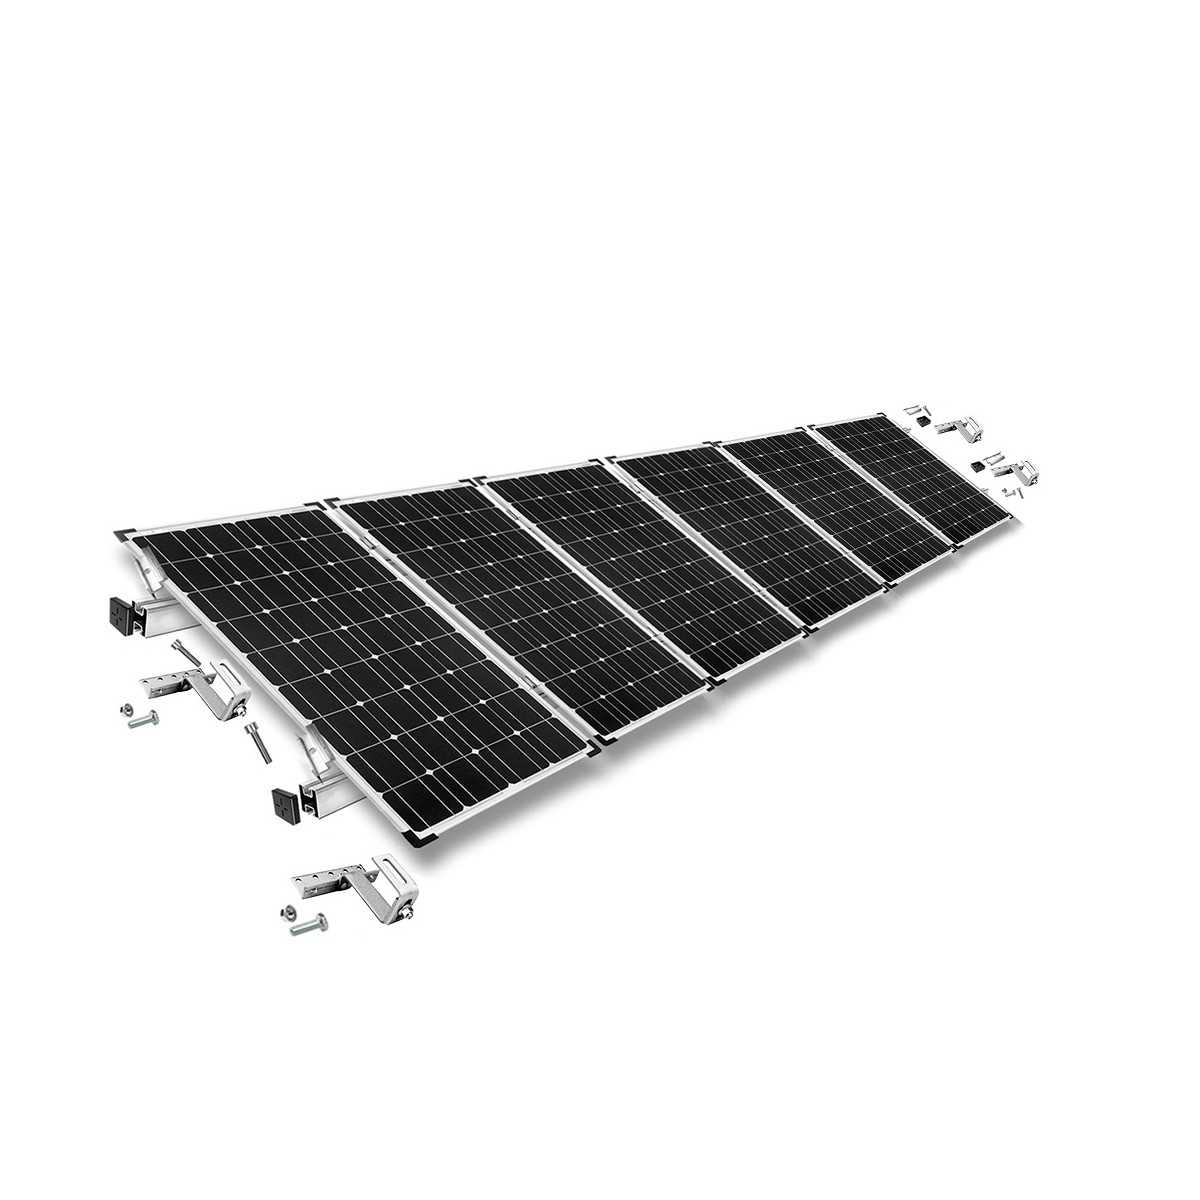 Kit di montaggio h35 regolabile con staffe per tetto (per tegole) per tetto inclinato 6 pannelli solari frame 35 mm